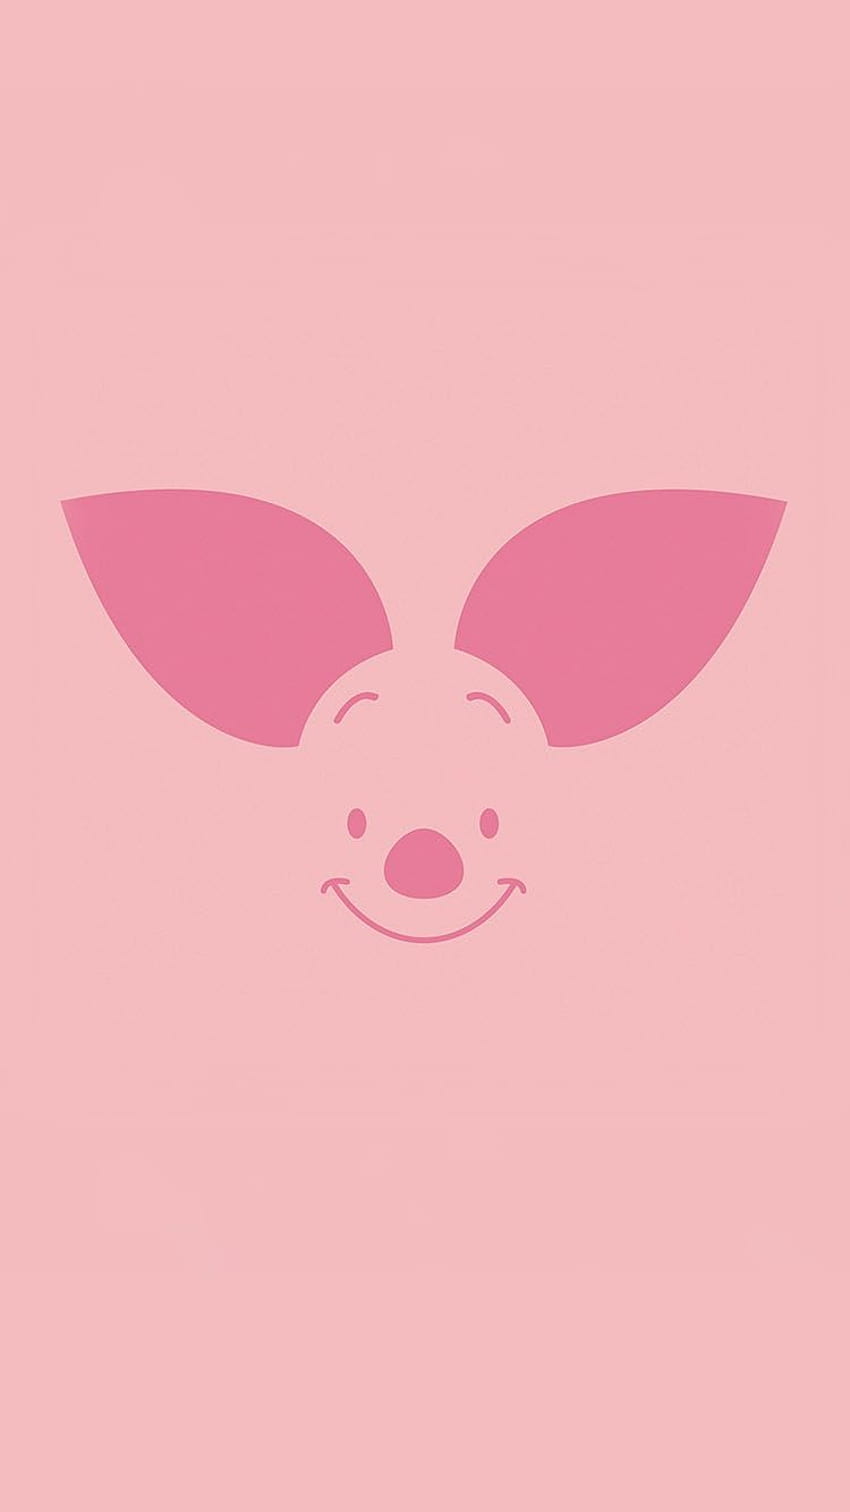 Piglet iPhone Gallery, Cute Pig HD phone wallpaper